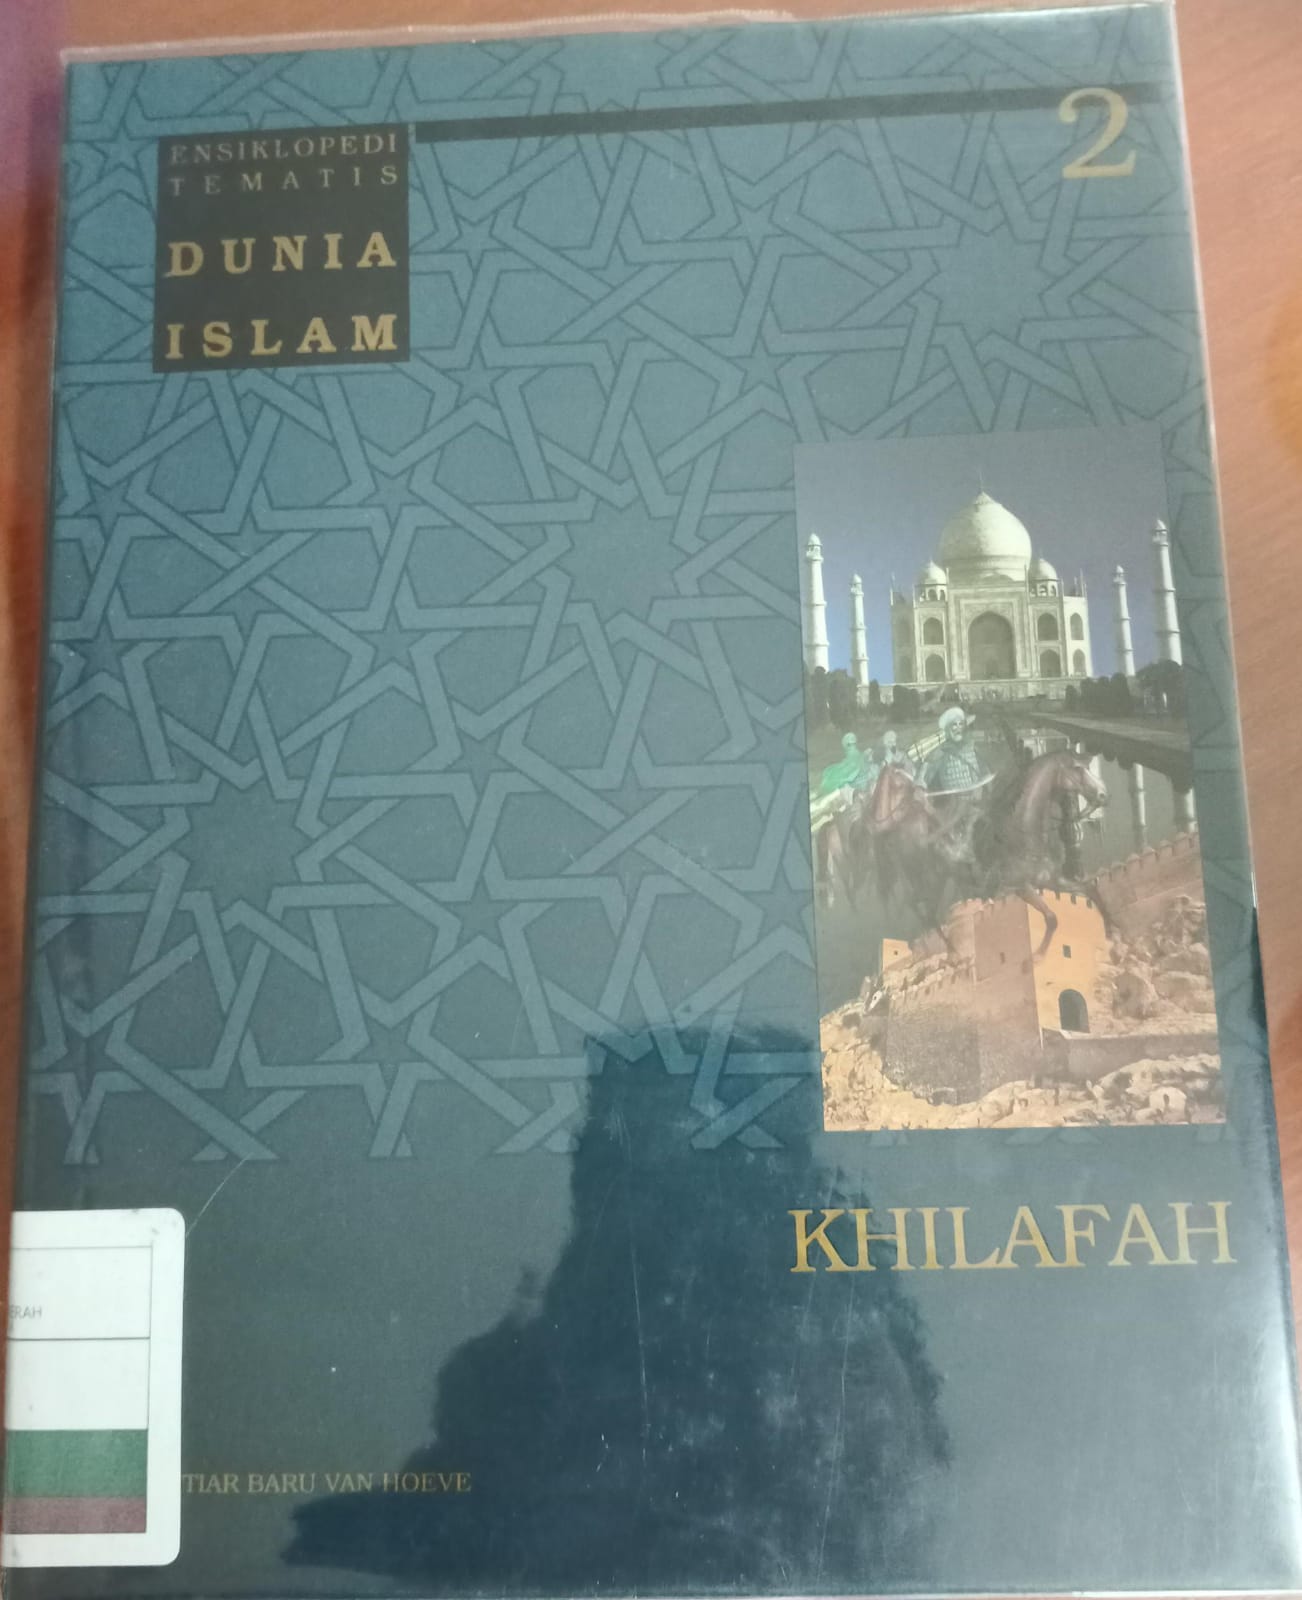 Ensiklopedi tematis dunia islam jilid 2 :  Khilafah